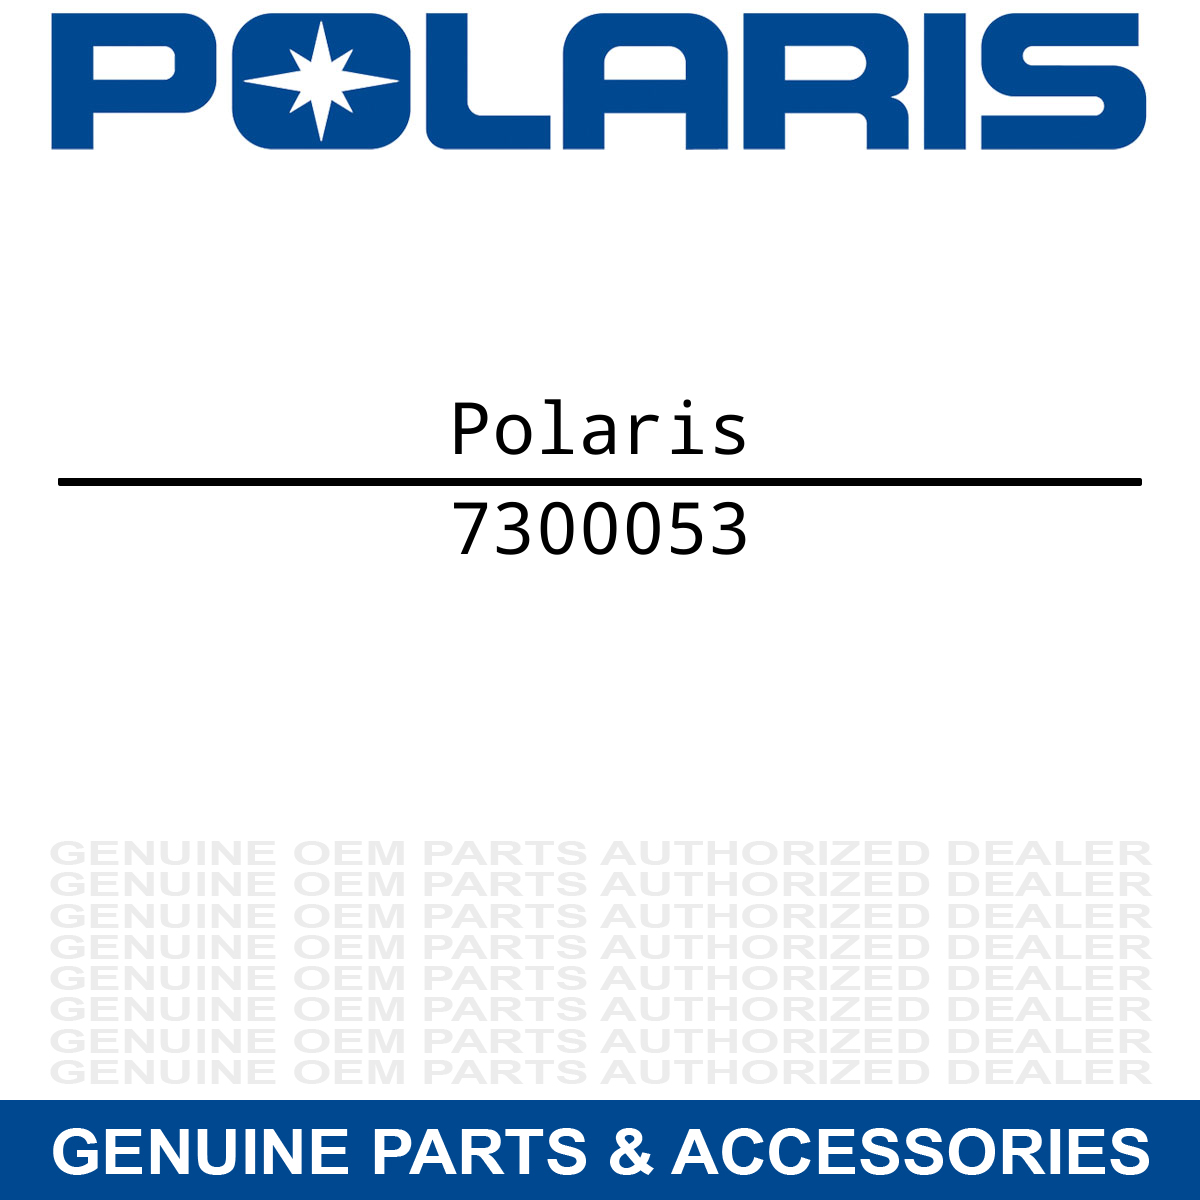 Polaris 7300053 EY 2014/94 Fuel Dyr Warning Decal